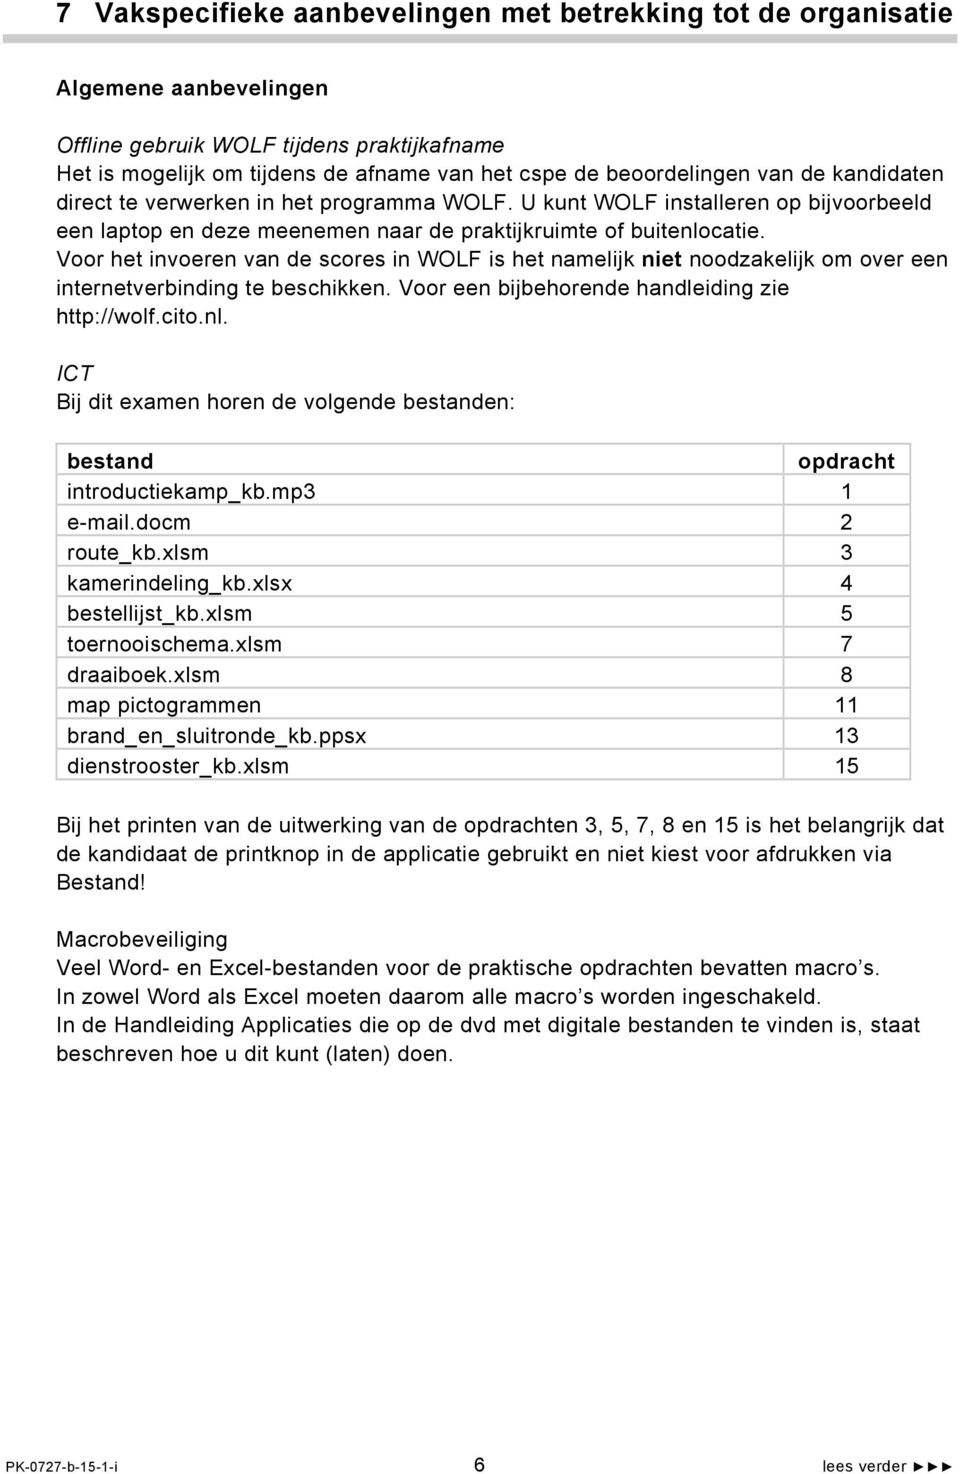 Voor het invoeren van de scores in WOLF is het namelijk niet noodzakelijk om over een internetverbinding te beschikken. Voor een bijbehorende handleiding zie http://wolf.cito.nl.